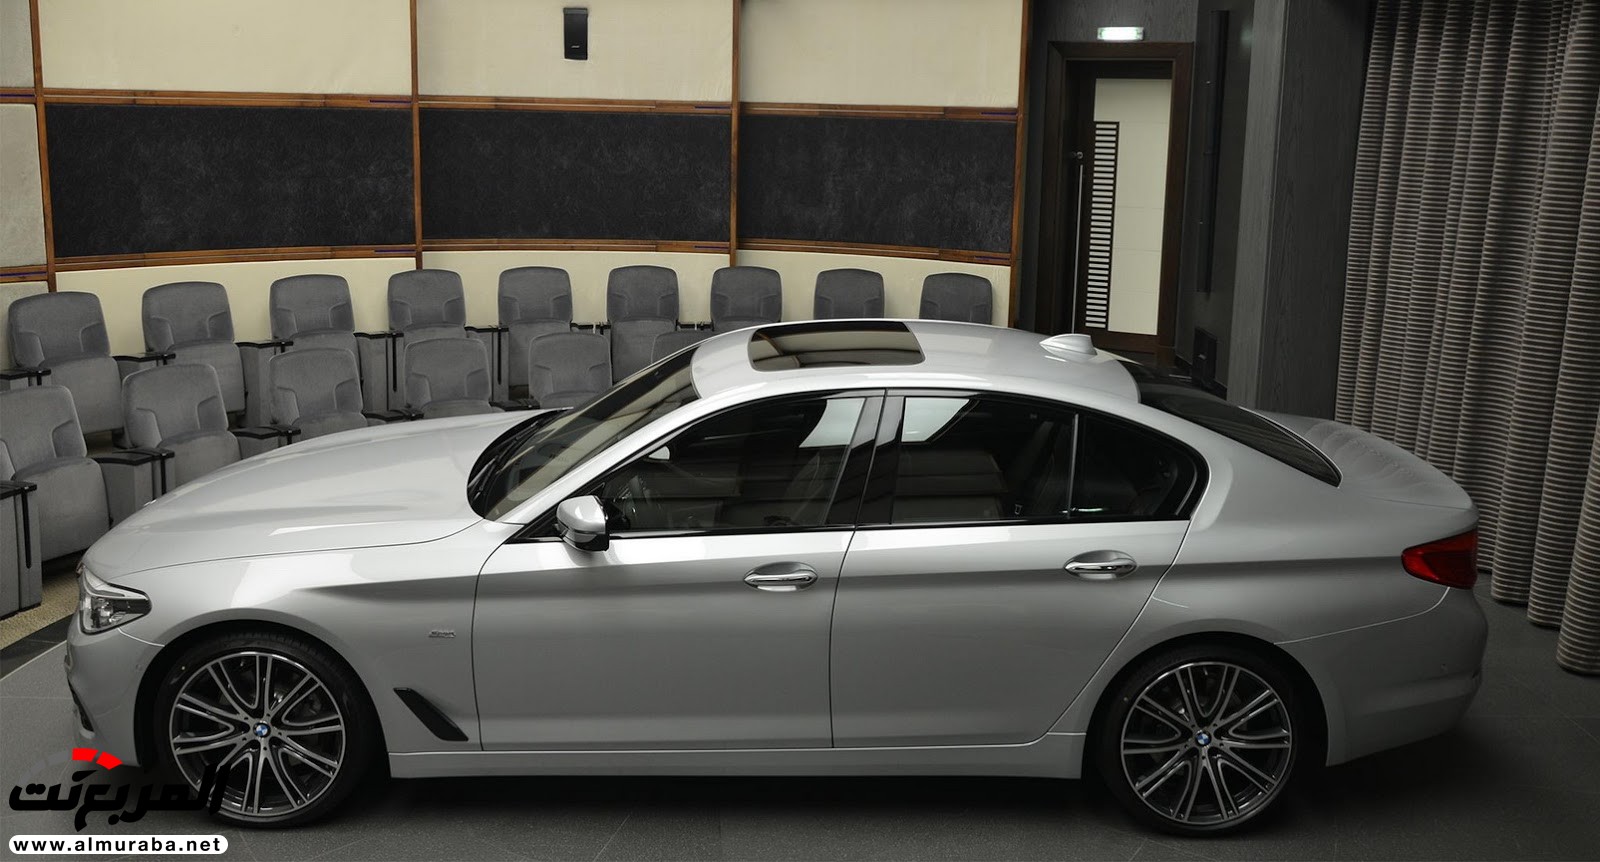 "بي إم دبليو" 540i الجديدة كلياً بتعديلات سبورت لاين معروضة بأبو ظبي BMW 76